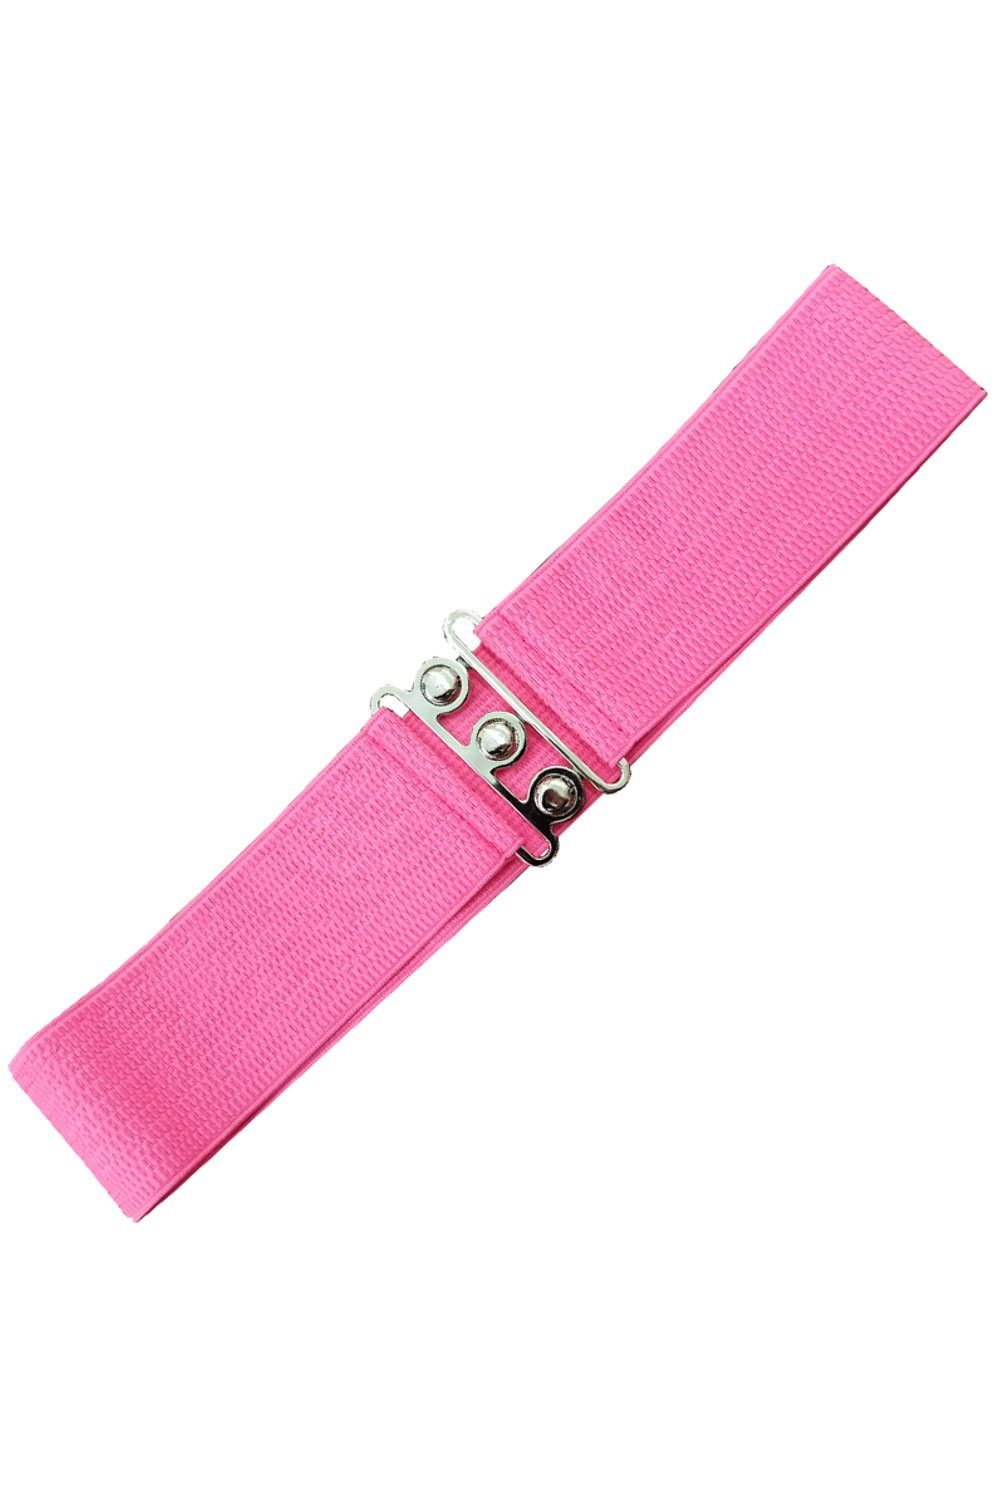 Banned Taillengürtel Sophia Pink Vintage Retro Stretchgürtel | Taillengürtel